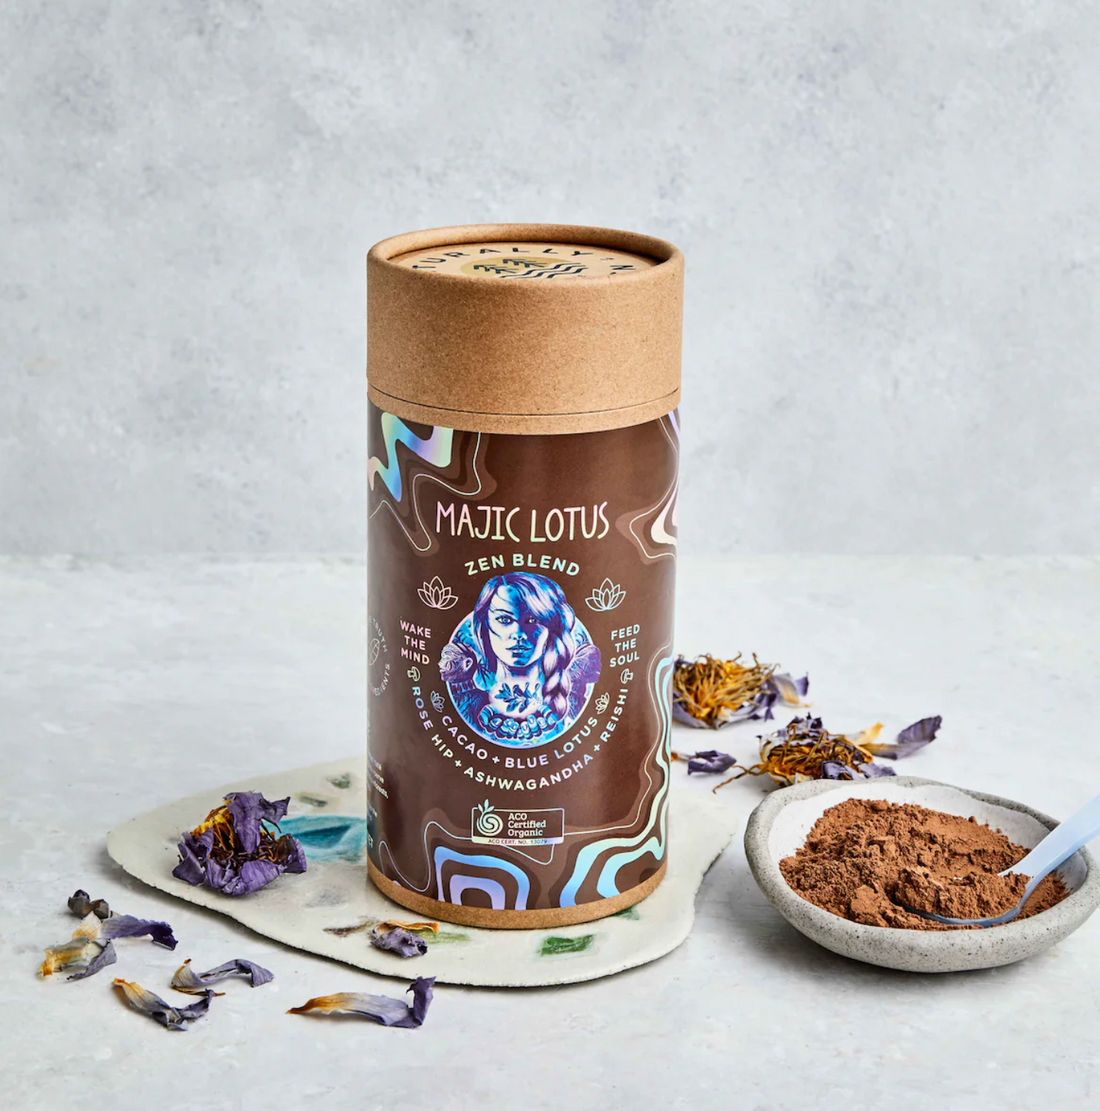 MAJIC LOTUS - Organic Cacao, Blue Lotus, Reishi, Ashwagandha Adaptogenic Latté